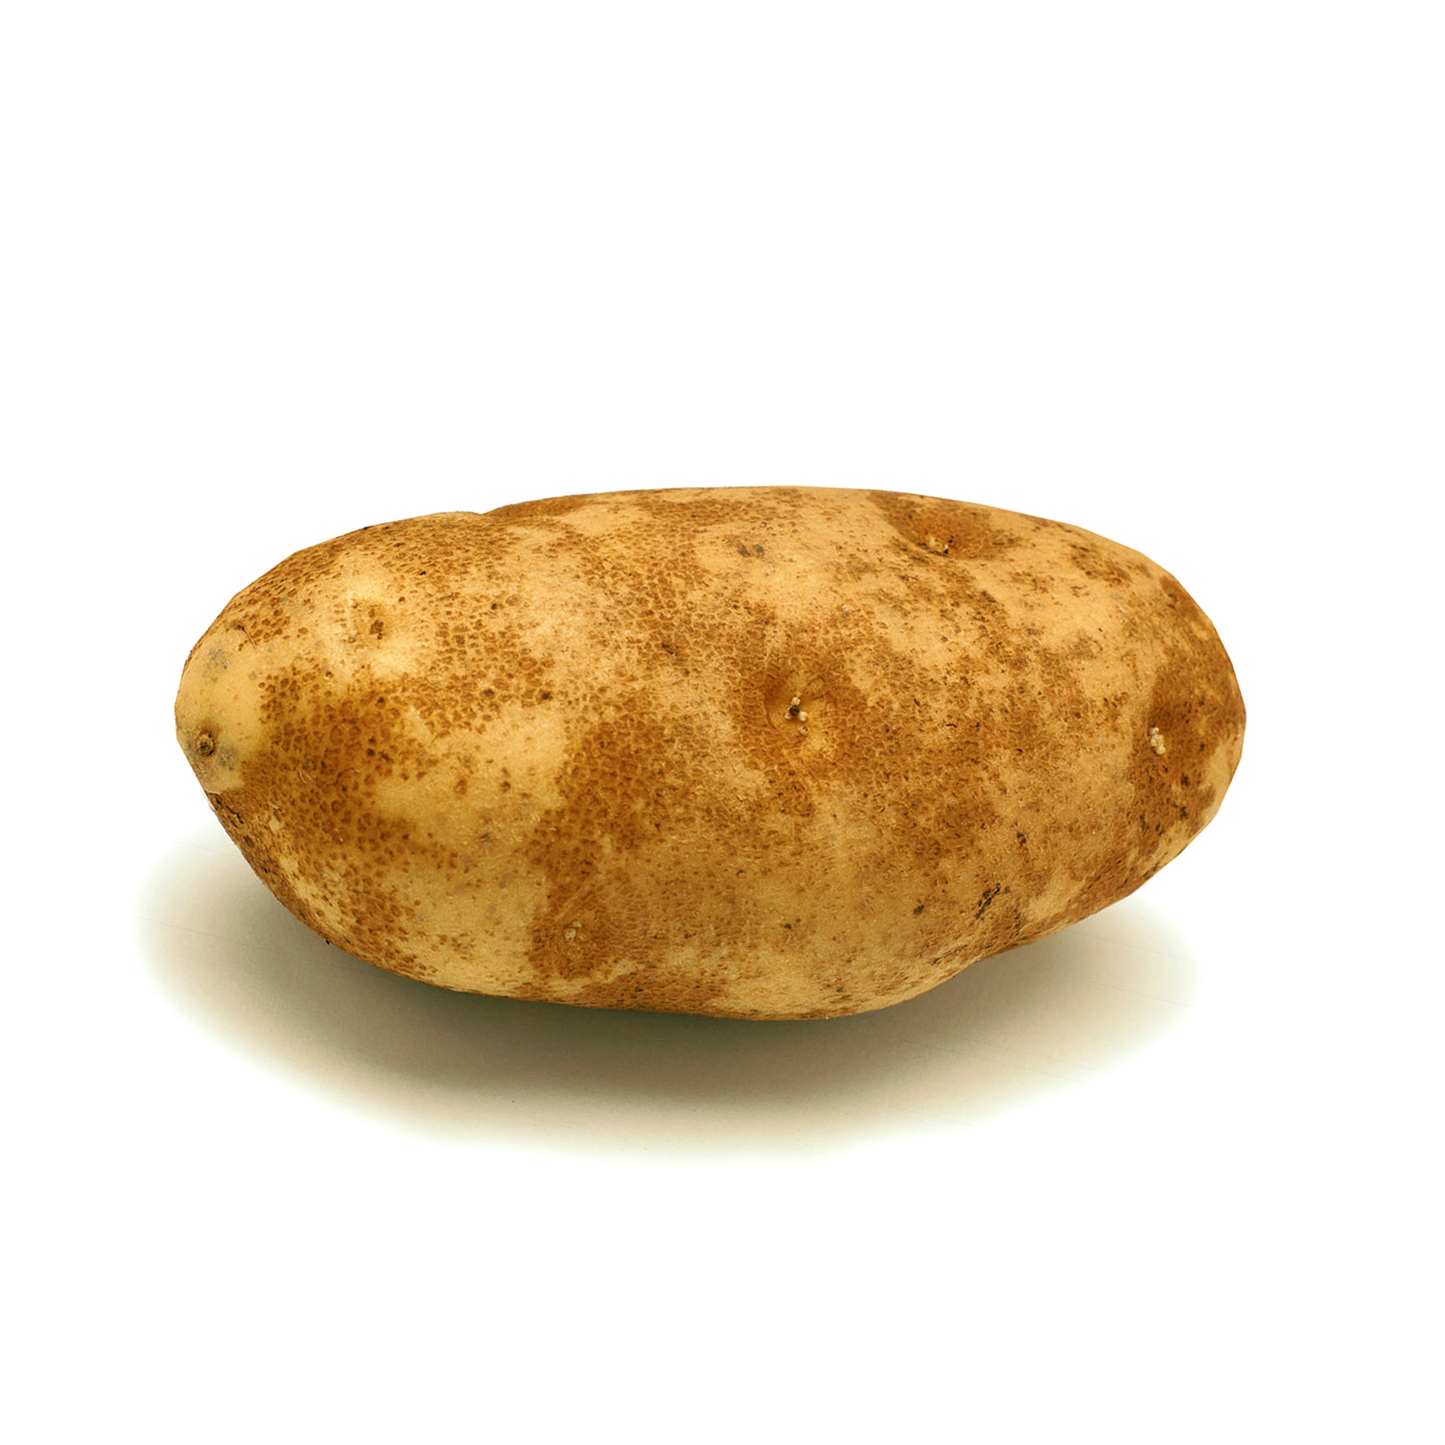 Russet Potato (Medium) / 1 pc